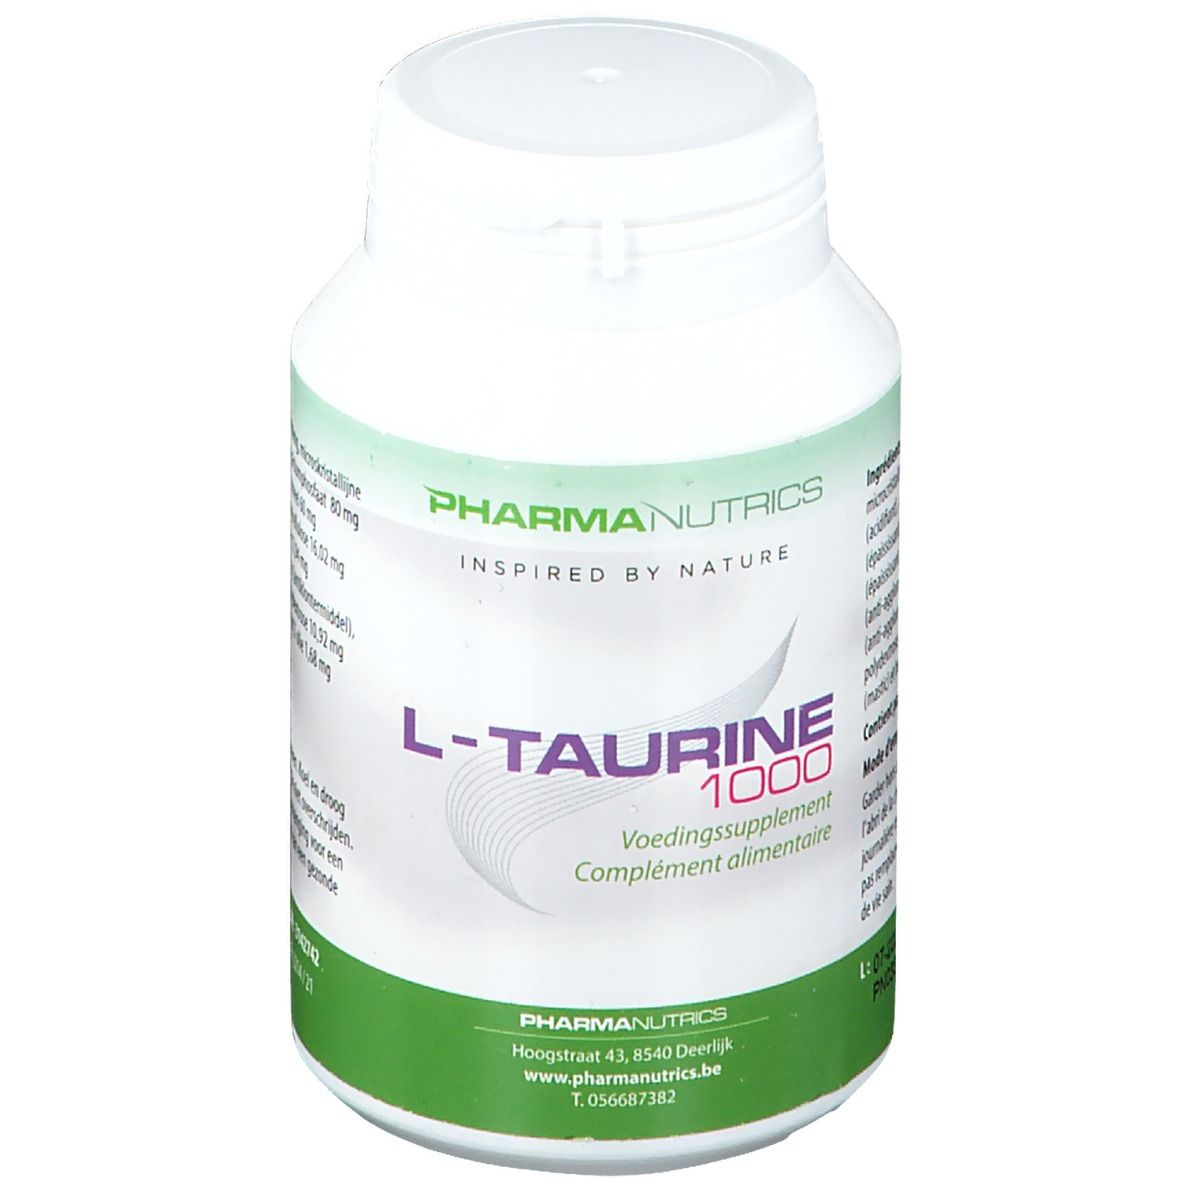 PharmaNutrics L-Taurine 1000